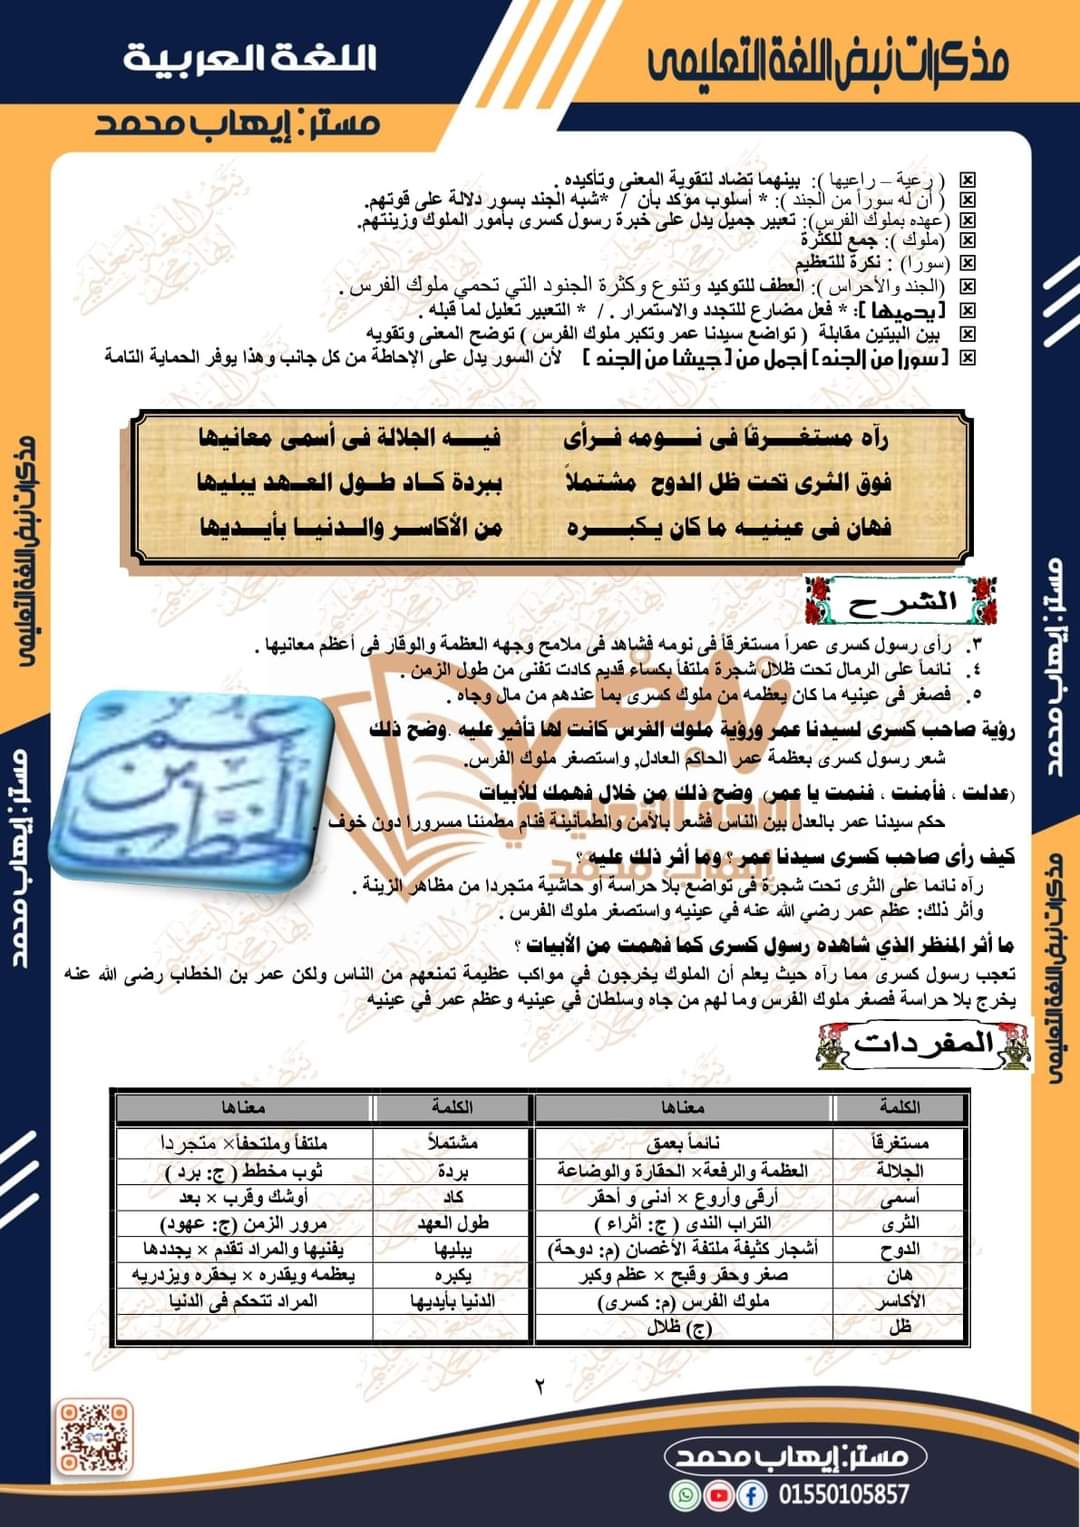 مذكرة نبض اللغة العربية للصف الأول الإعدادي الترم الثاني إعداد مستر إيهاب محمد